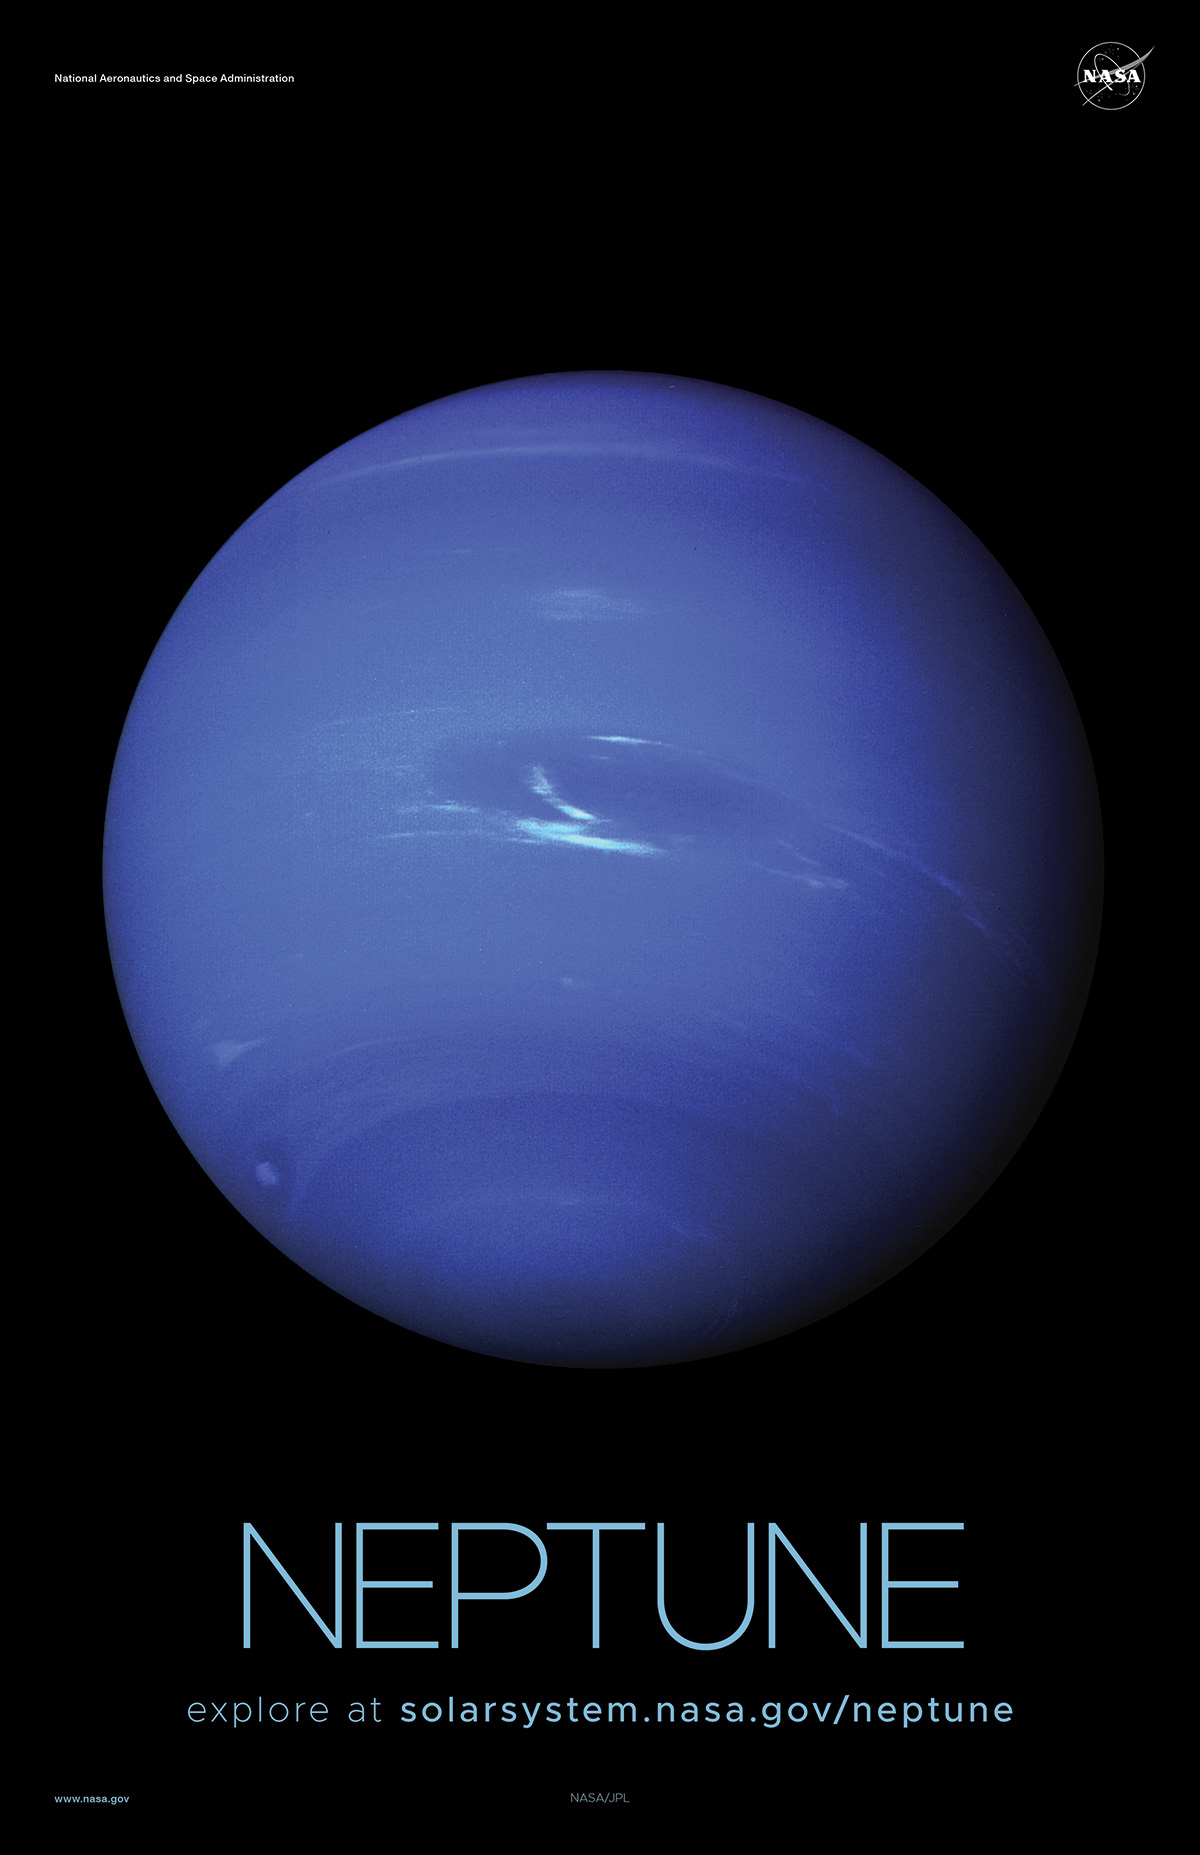 Full disk view of blue ice giant Neptune.